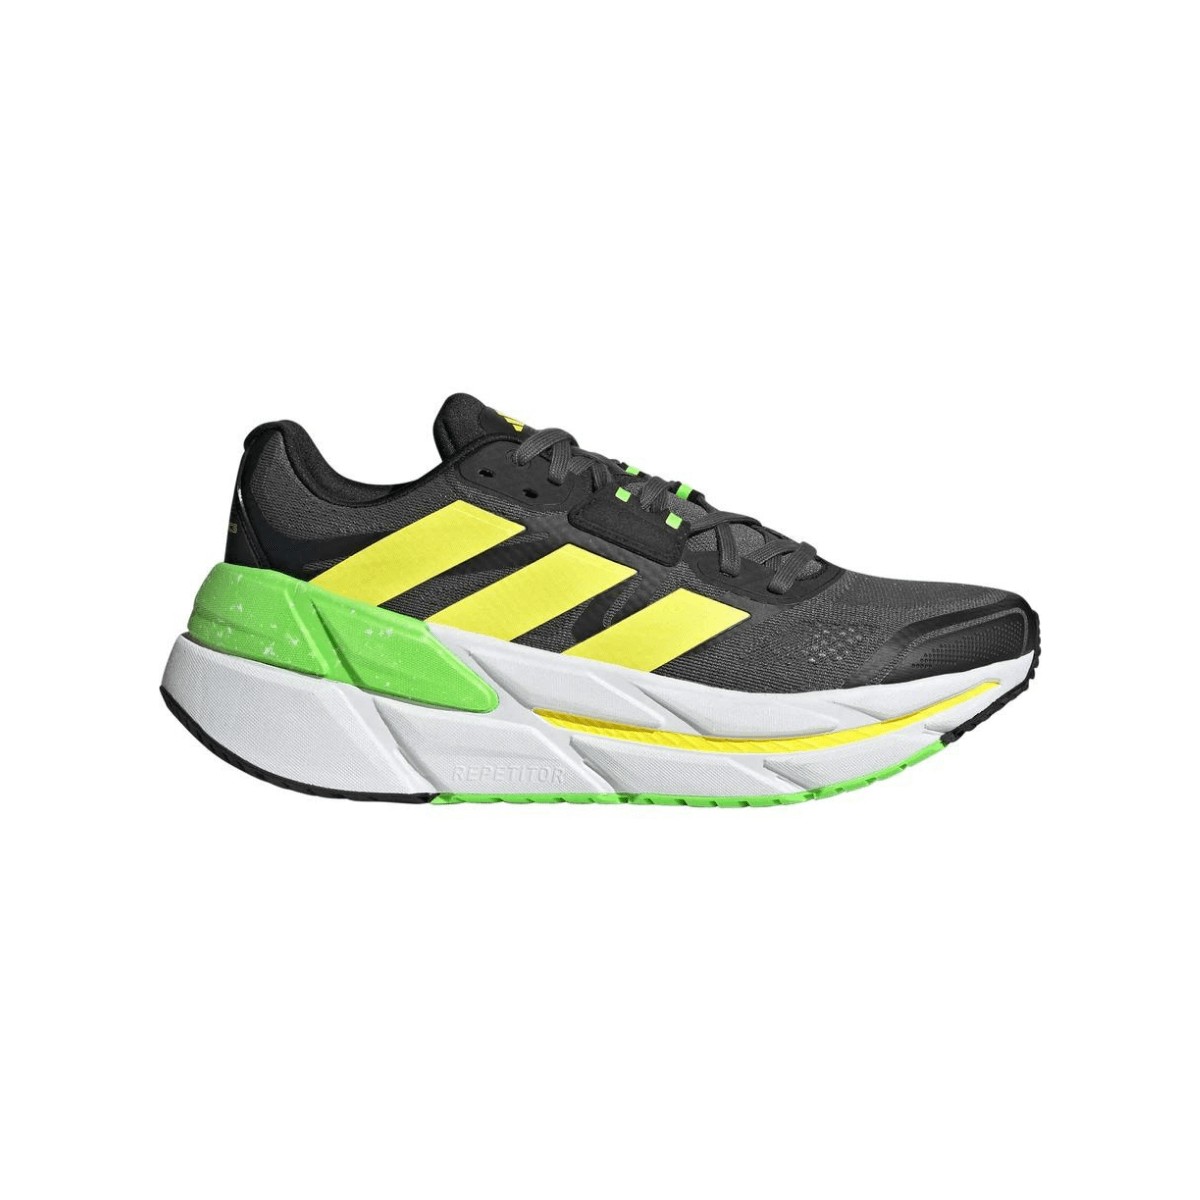 Adistar CS: características y opiniones - Zapatillas running | Runnea